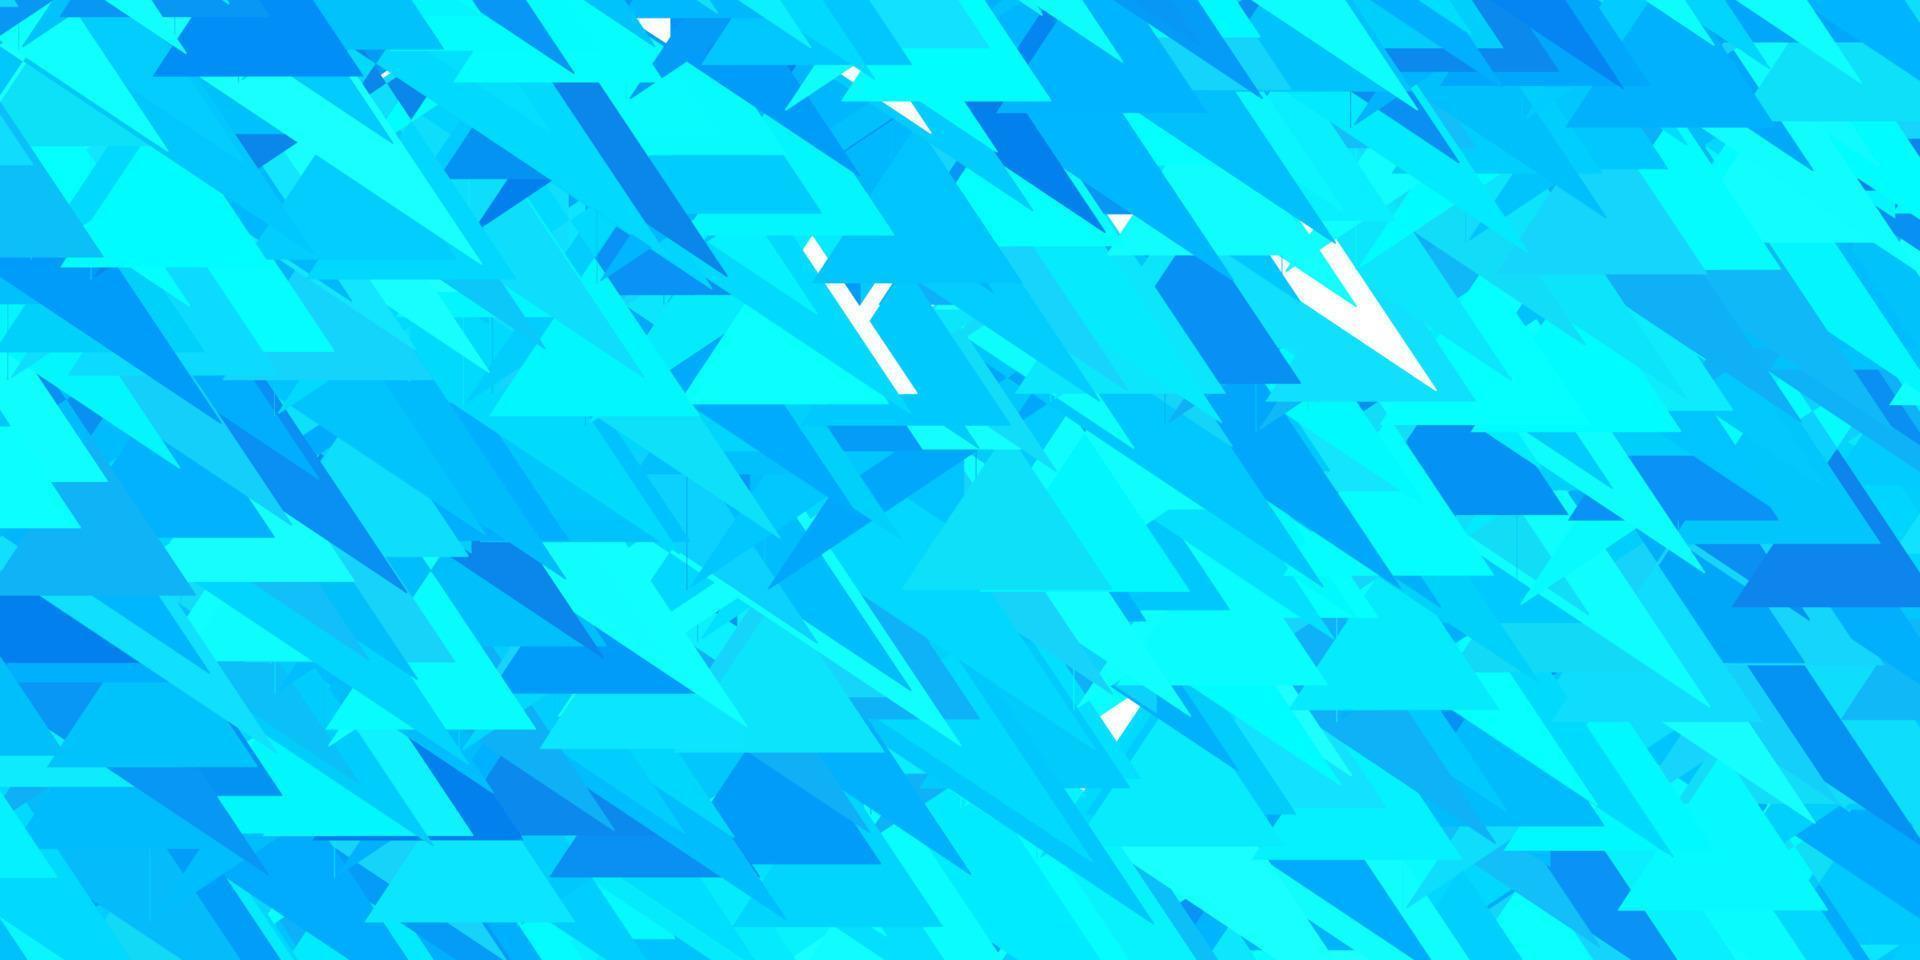 hellblaue Vektortextur mit zufälligen Dreiecken. vektor